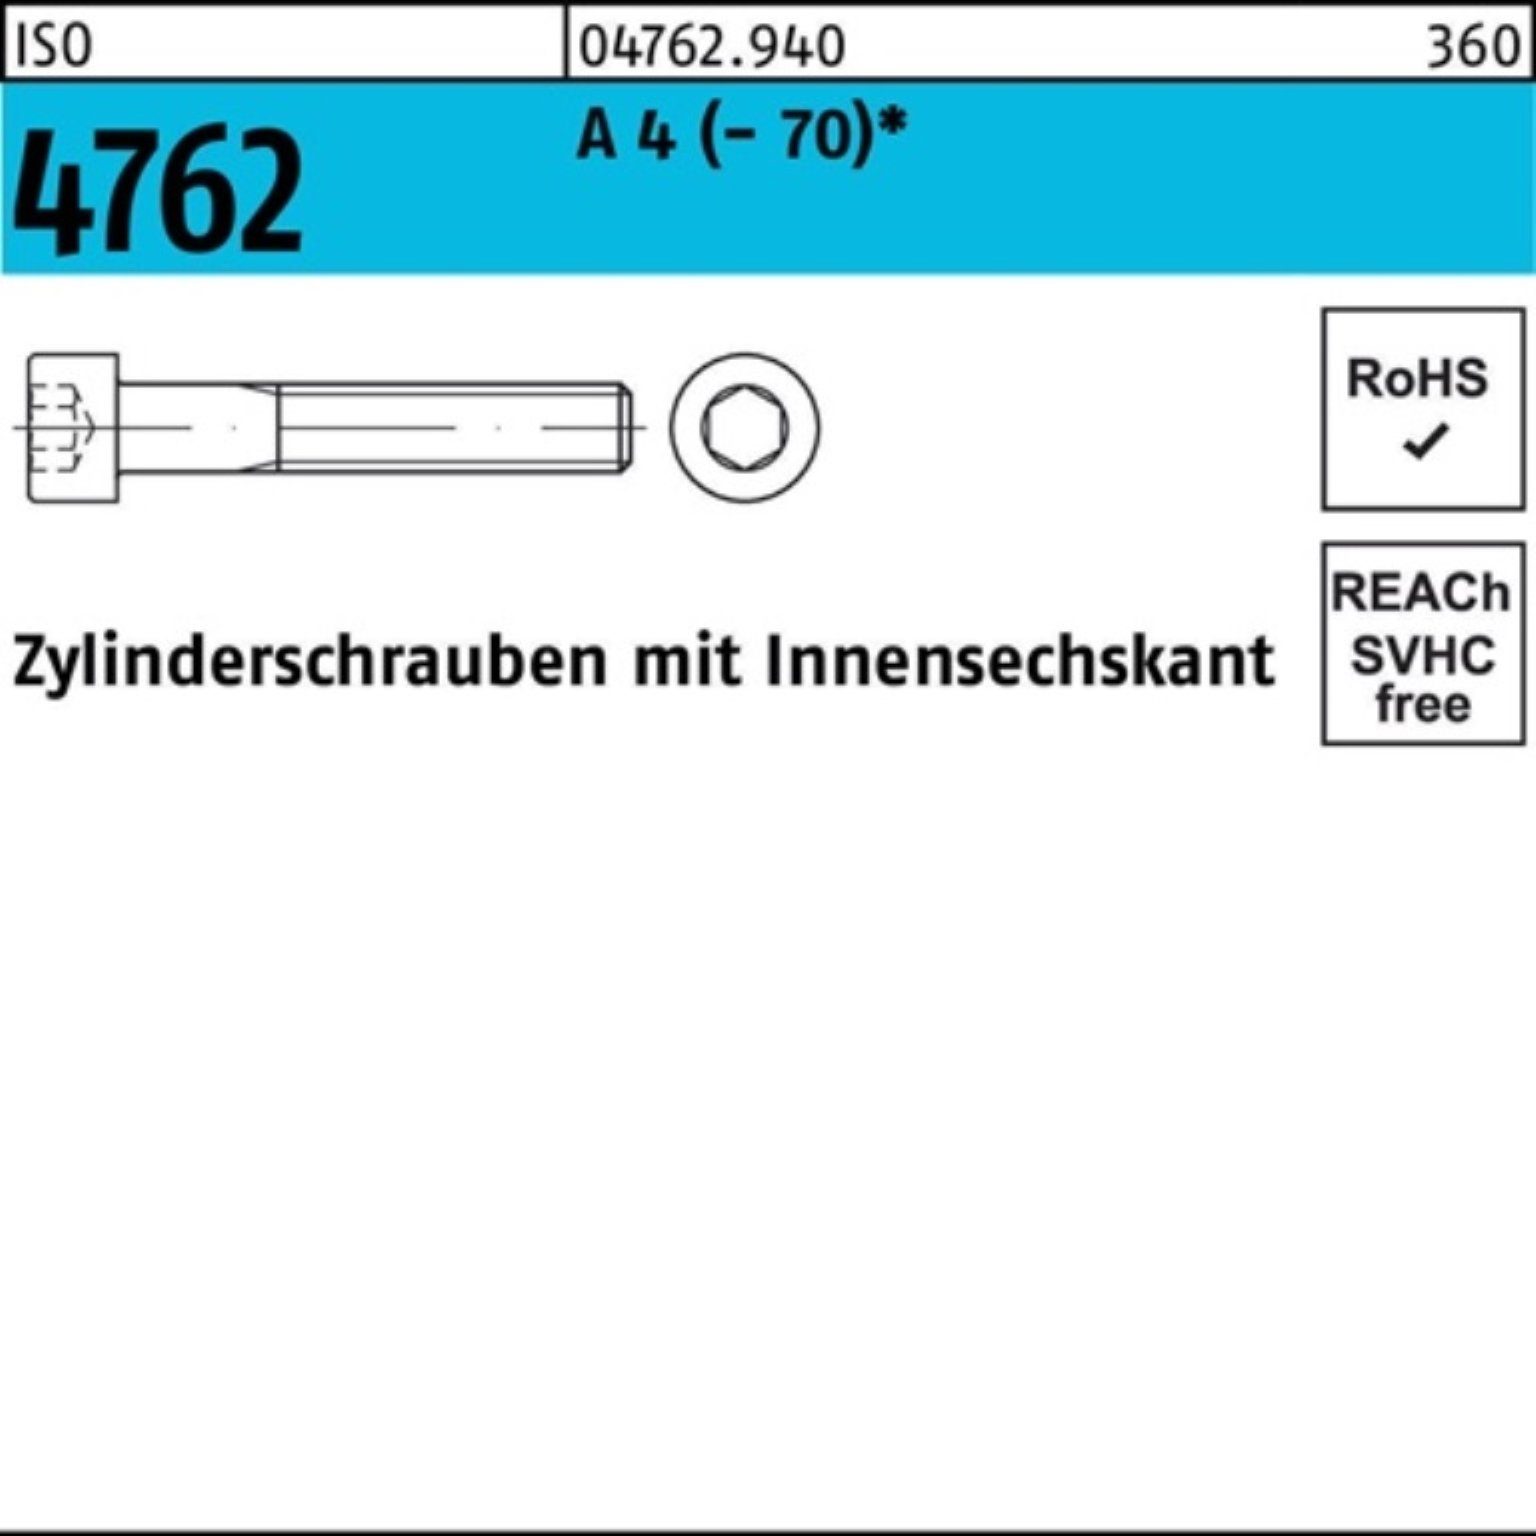 4 (70) Zylinderschraube S Reyher 500er 4762 ISO Innen-6kt Zylinderschraube 25 Pack M5x 500 A